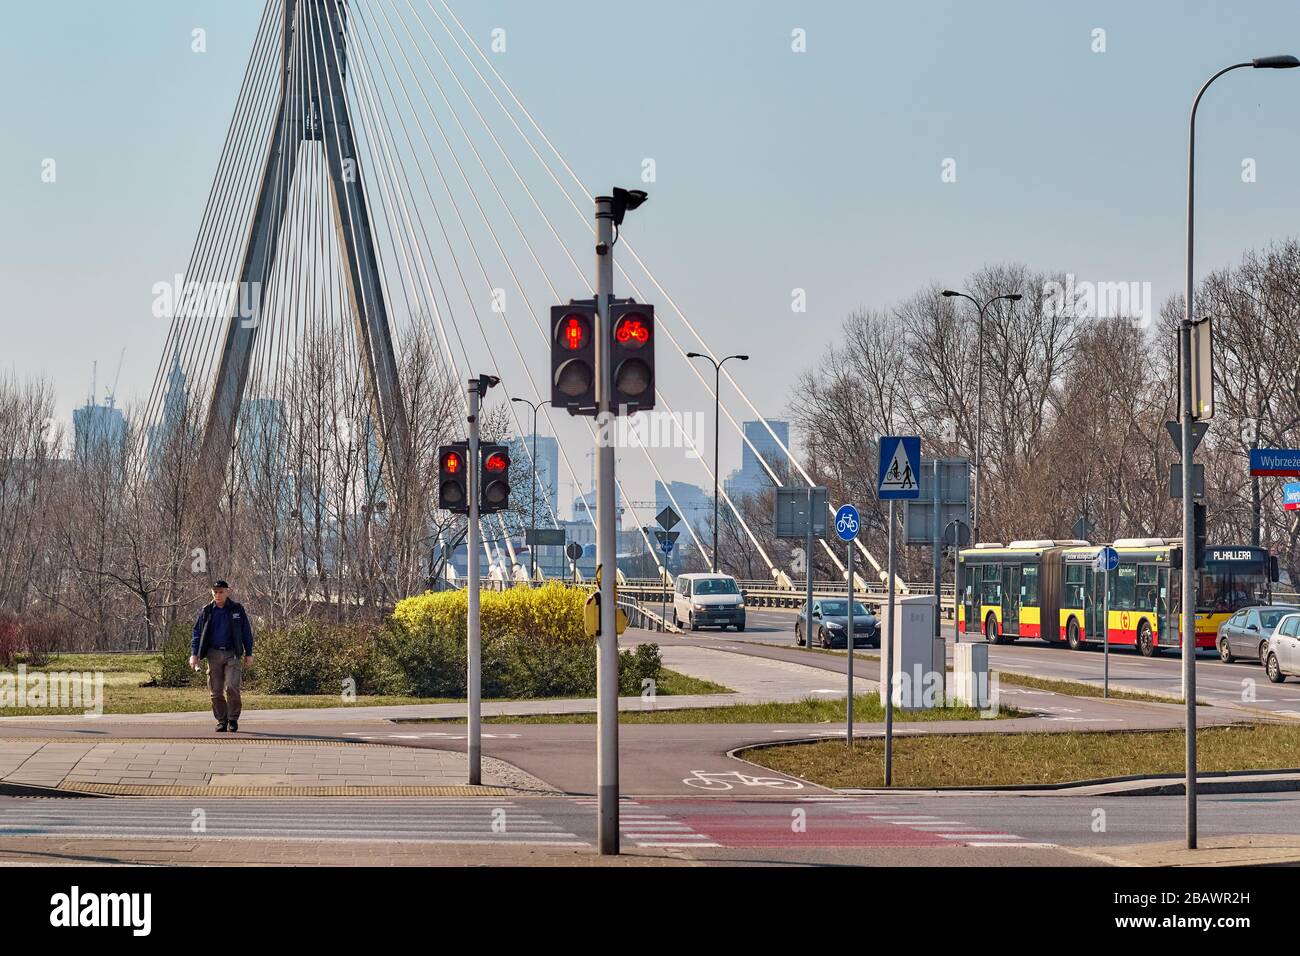 Warsaw street cross, near Świętokrzyski bridge, Poland Stock Photo